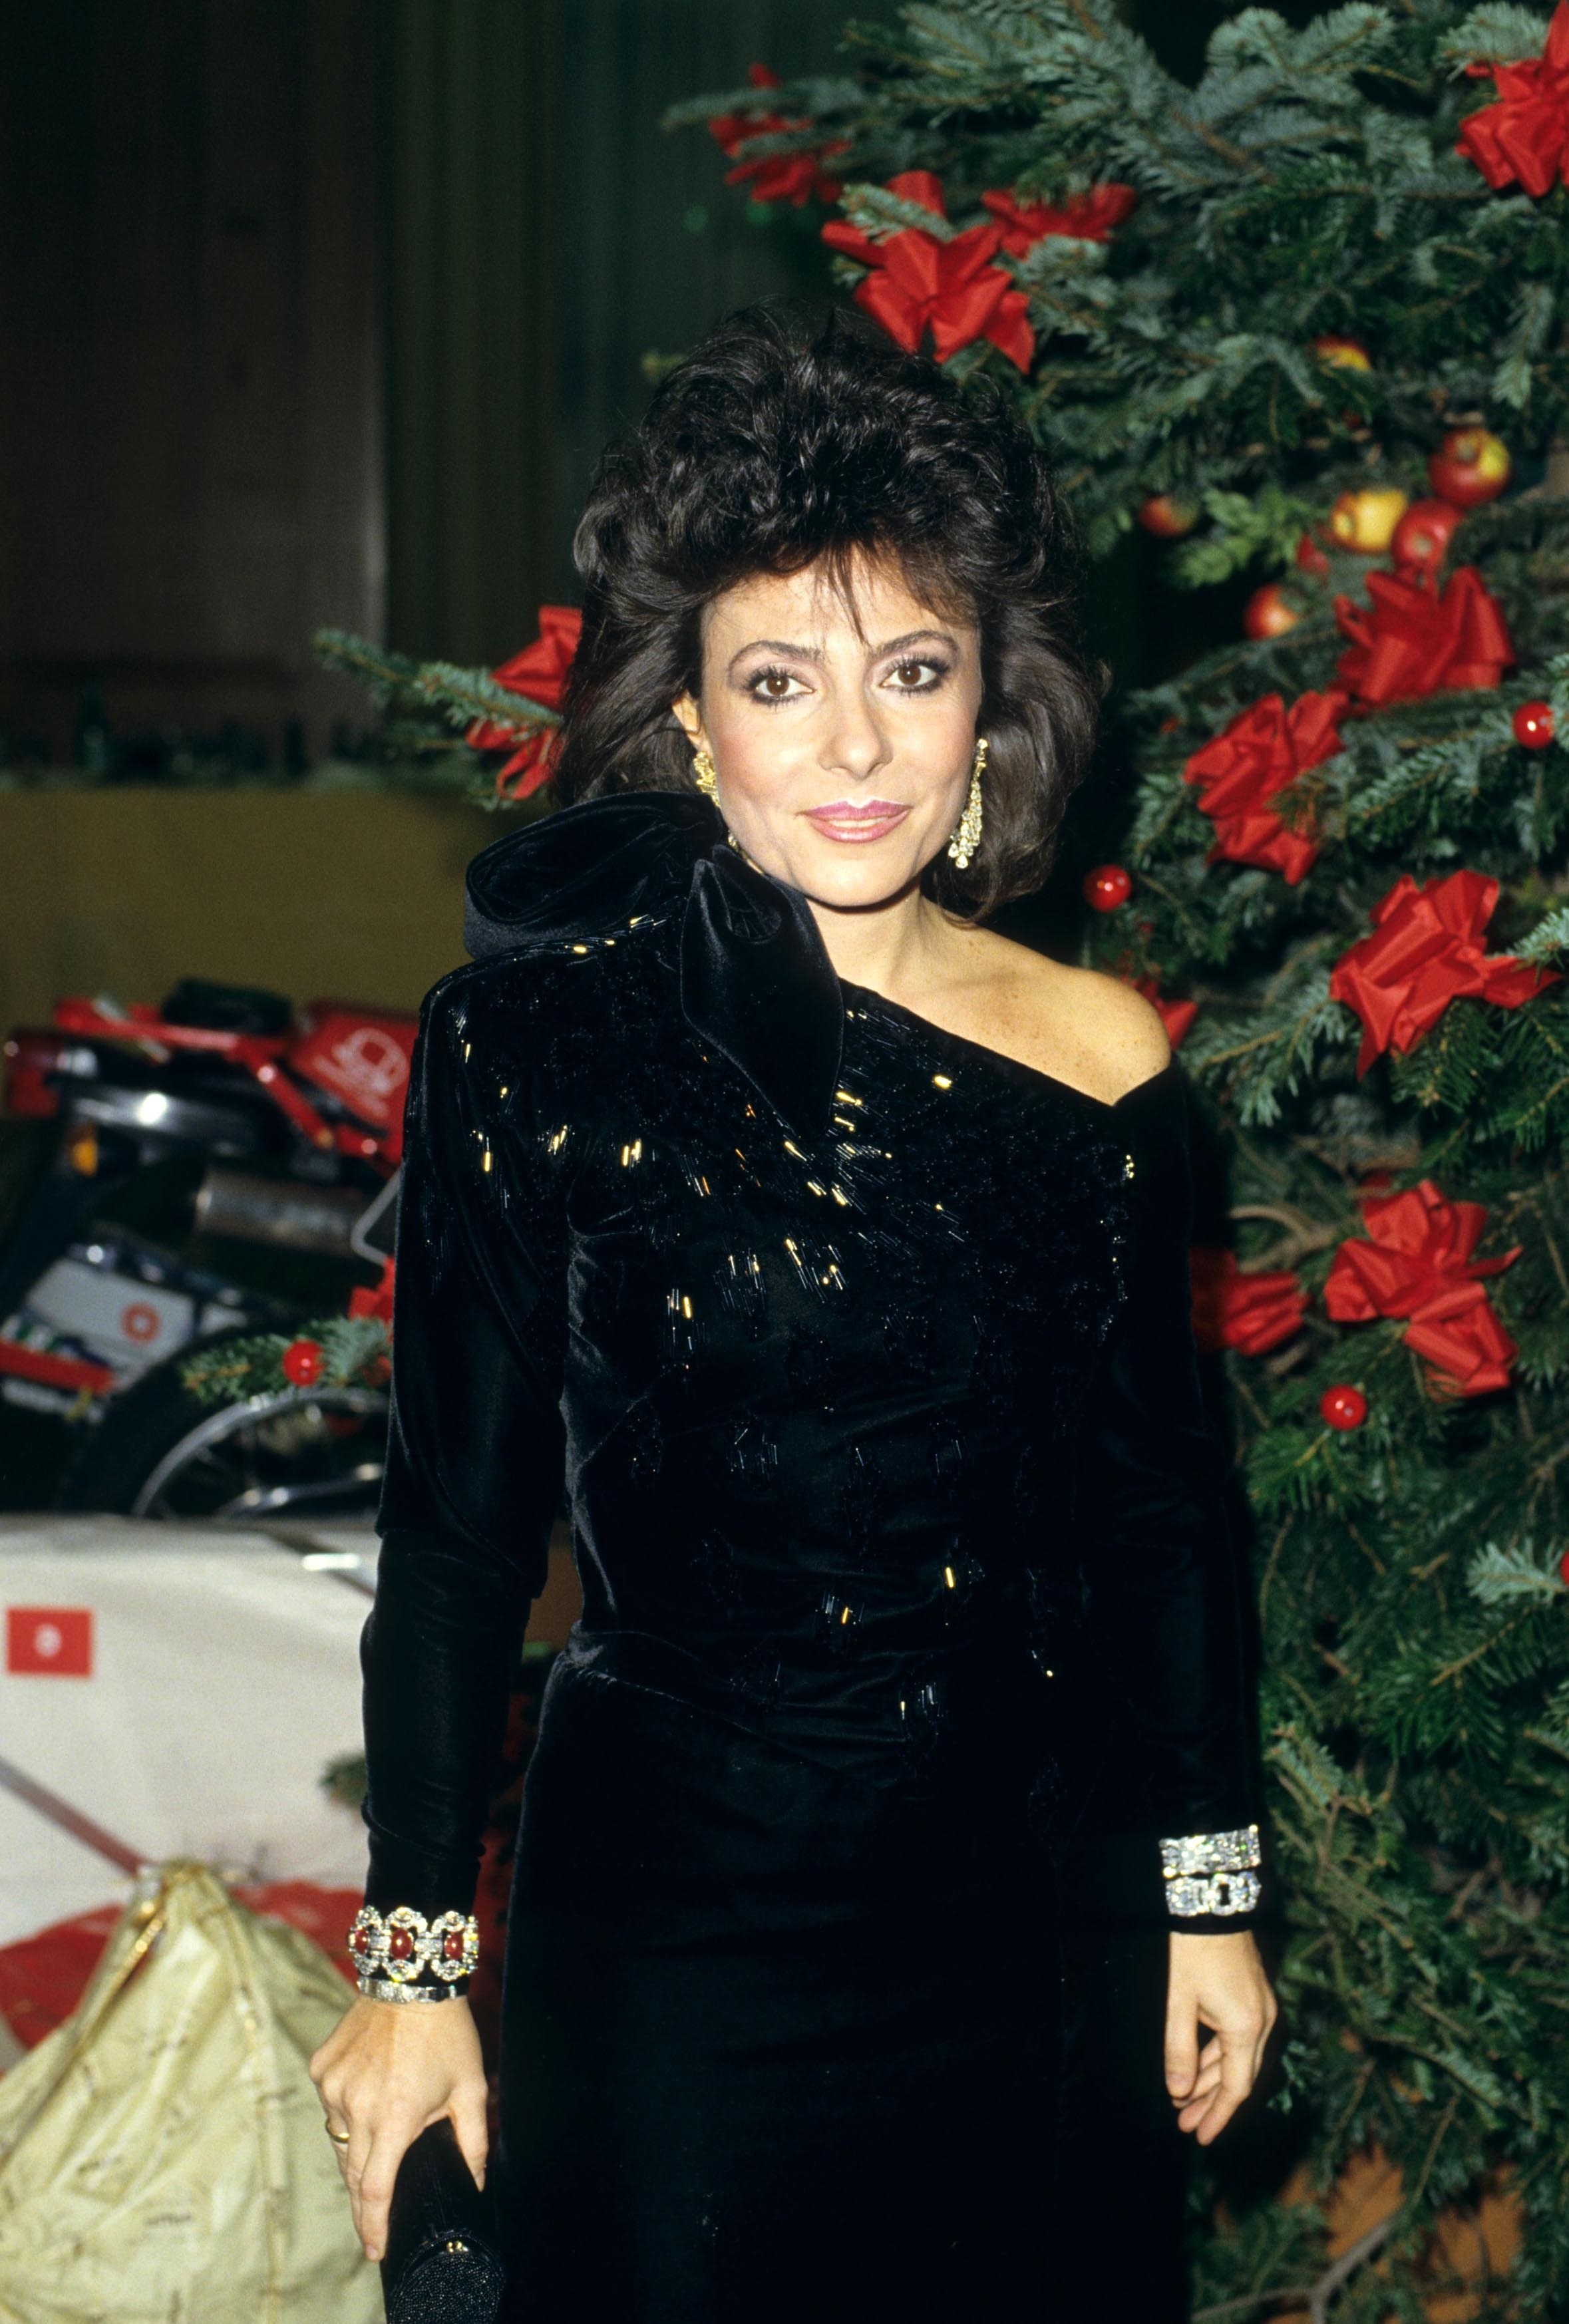 Patrizia Reggiani at an event in the &#x27;80s